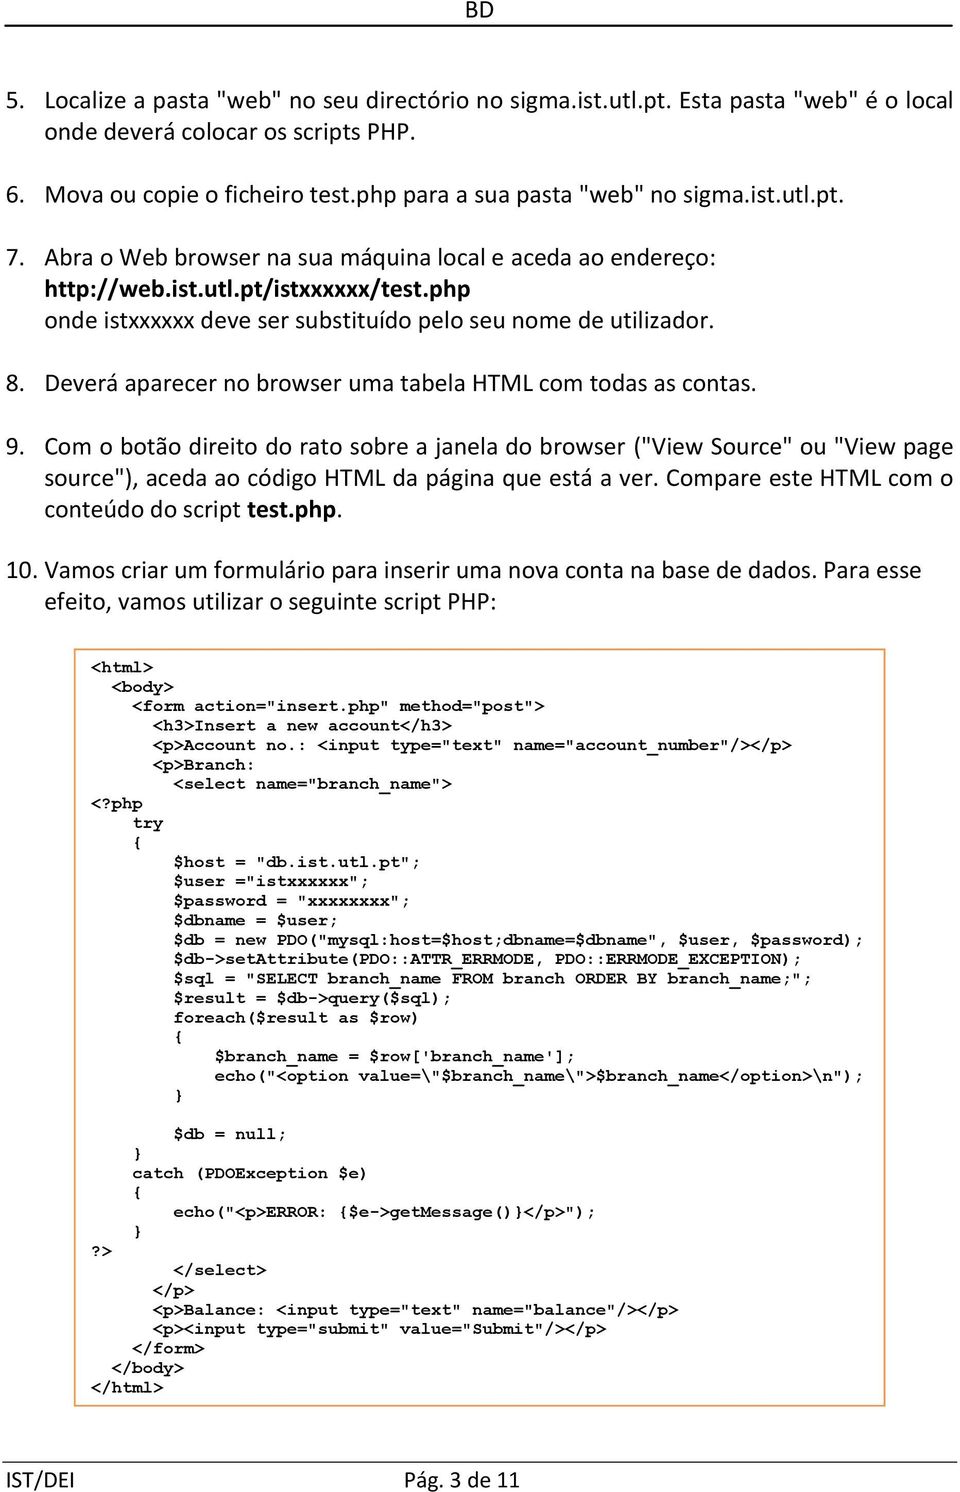 Com o botão direito do rato sobre a janela do browser ("View Source" ou "View page source"), aceda ao código HTML da página que está a ver. Compare este HTML com o conteúdo do script test.php. 10.